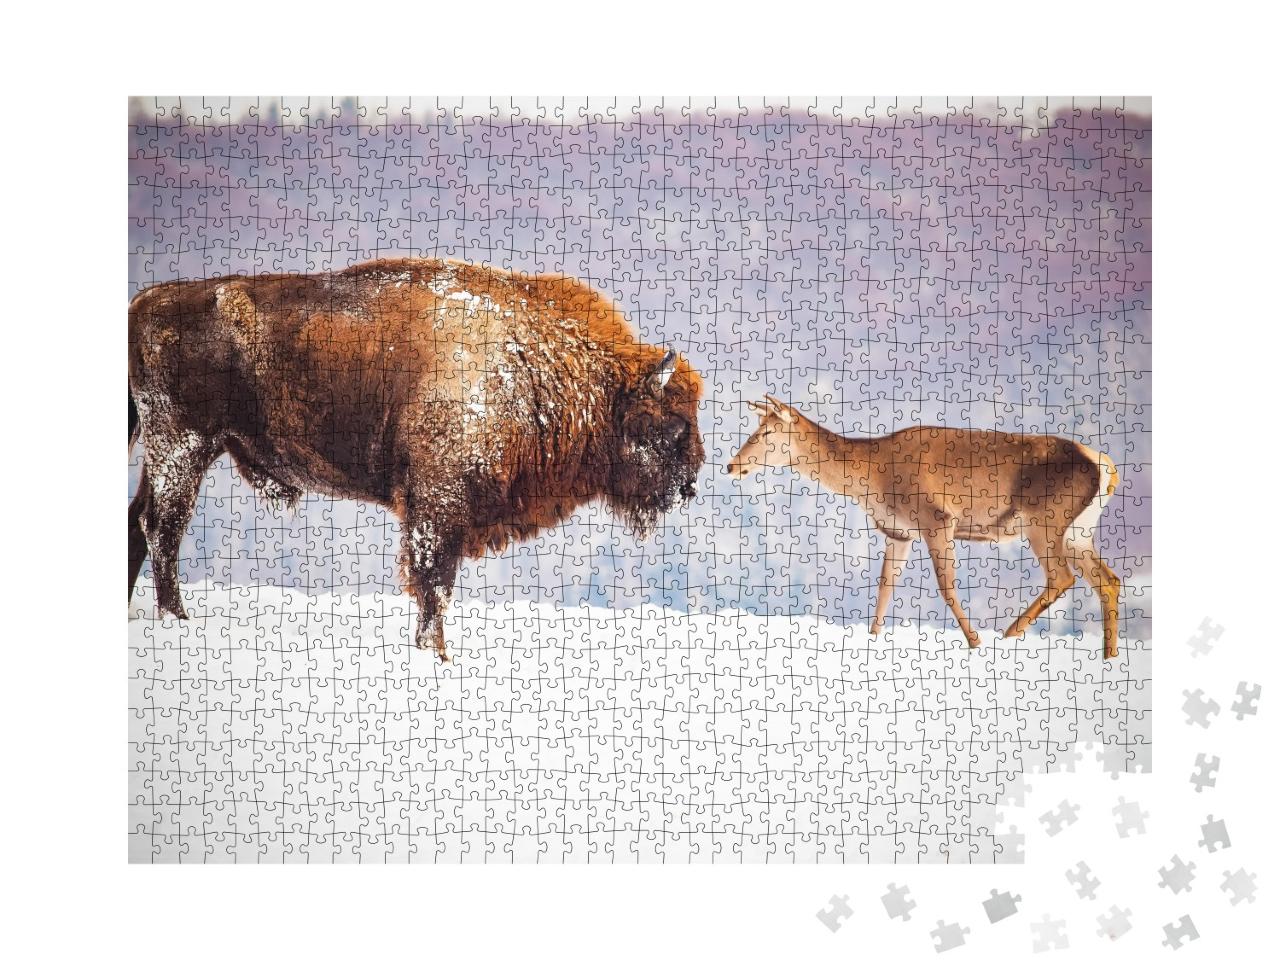 Puzzle de 1000 pièces « Bisons et cerfs européens en hiver »